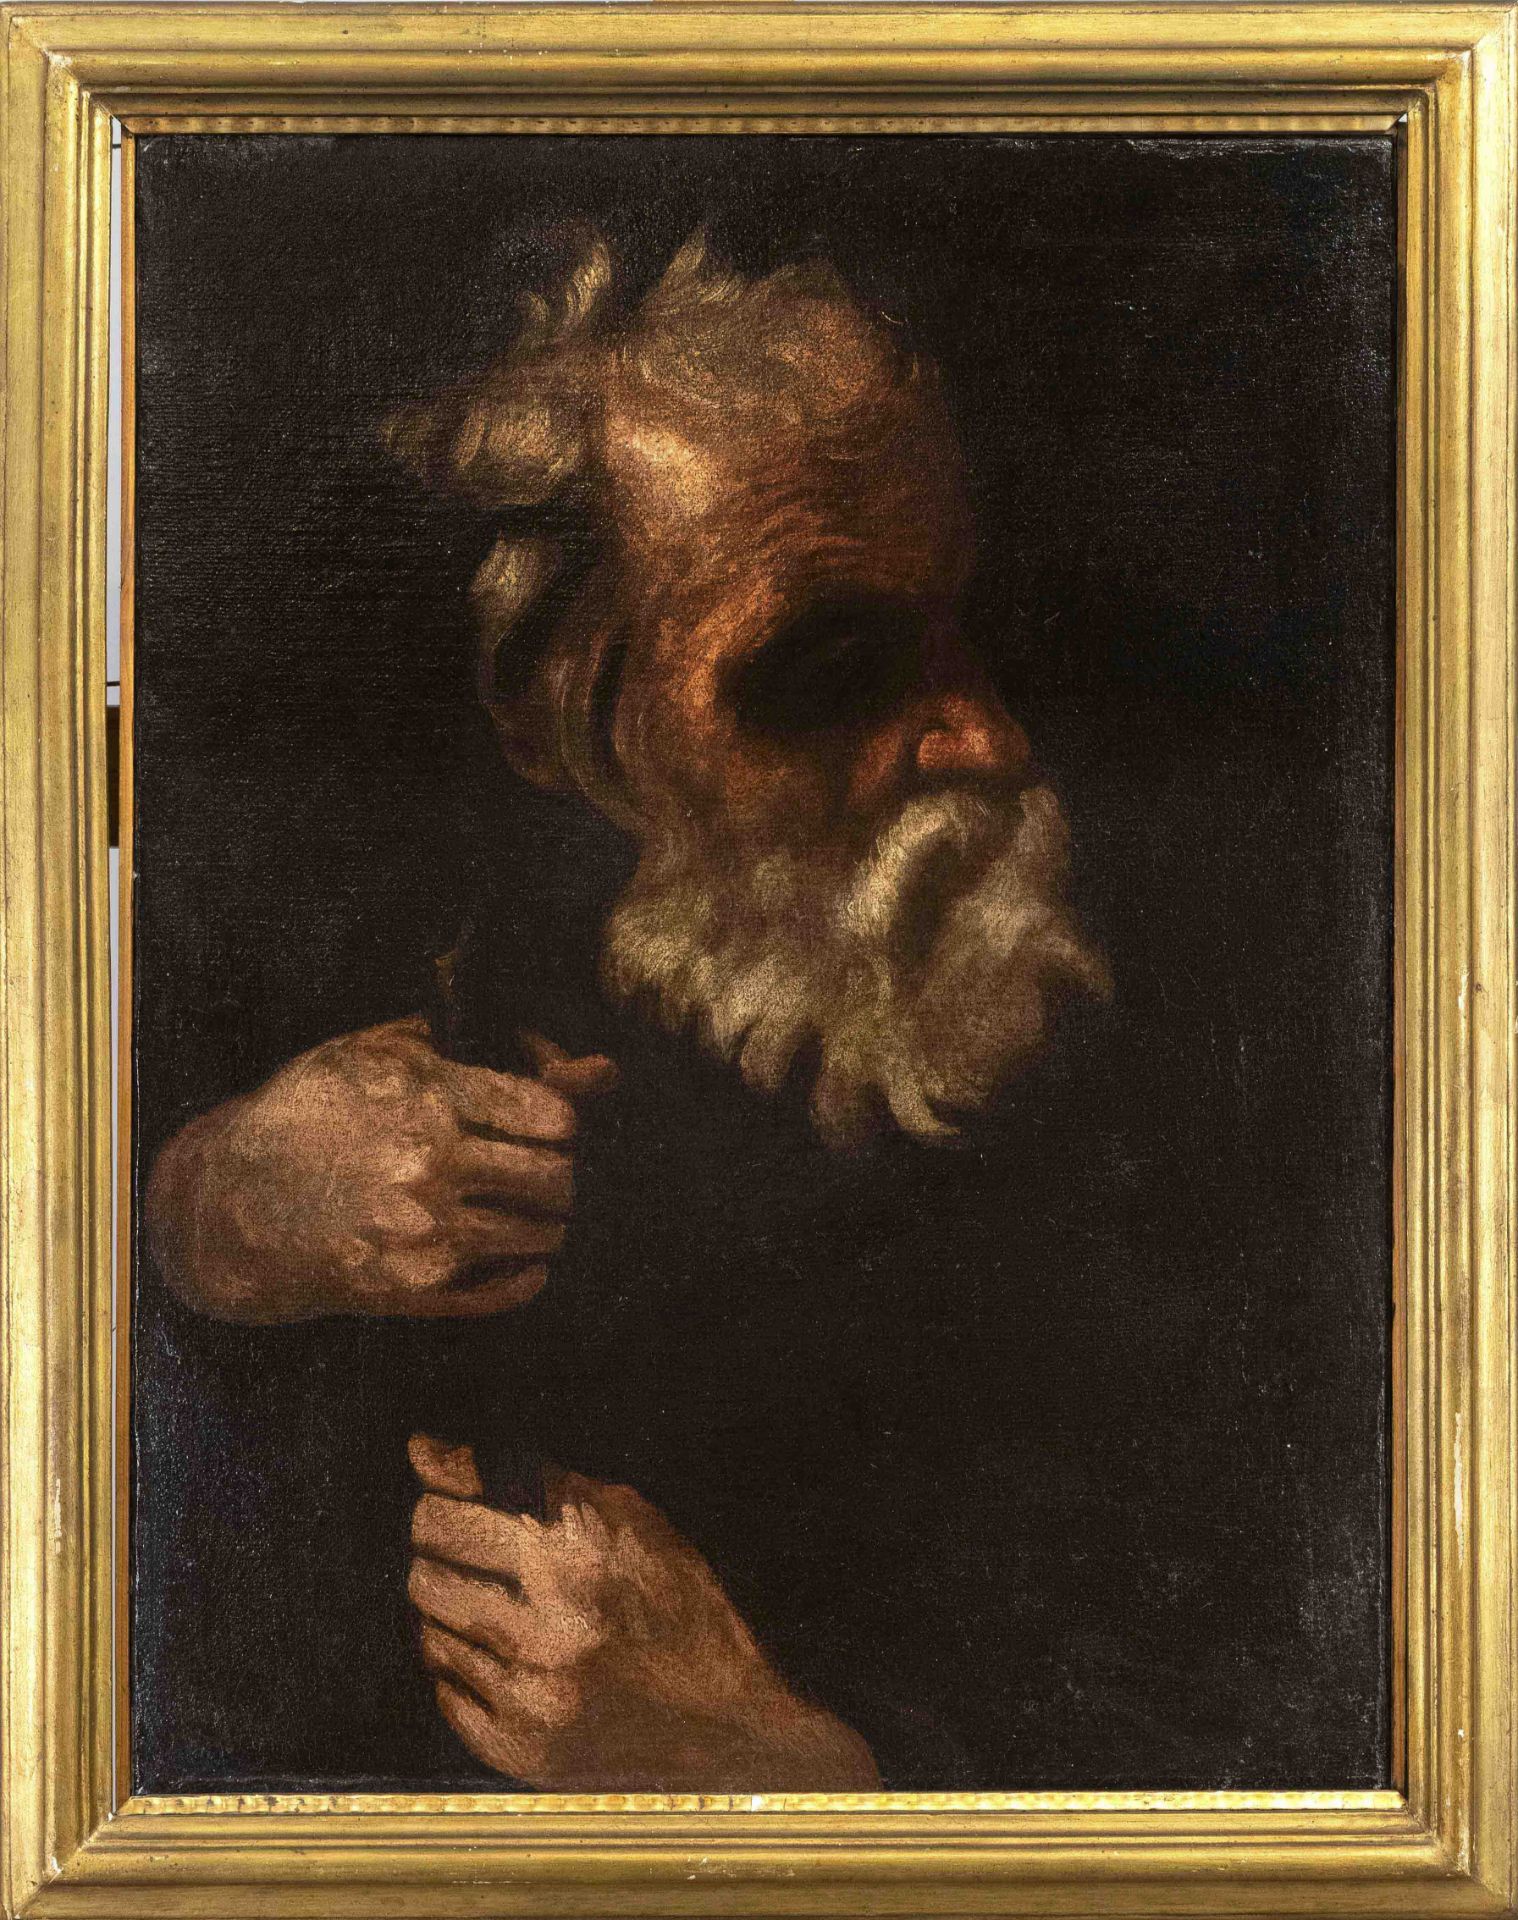 Italienischer Maler um 1700, wo